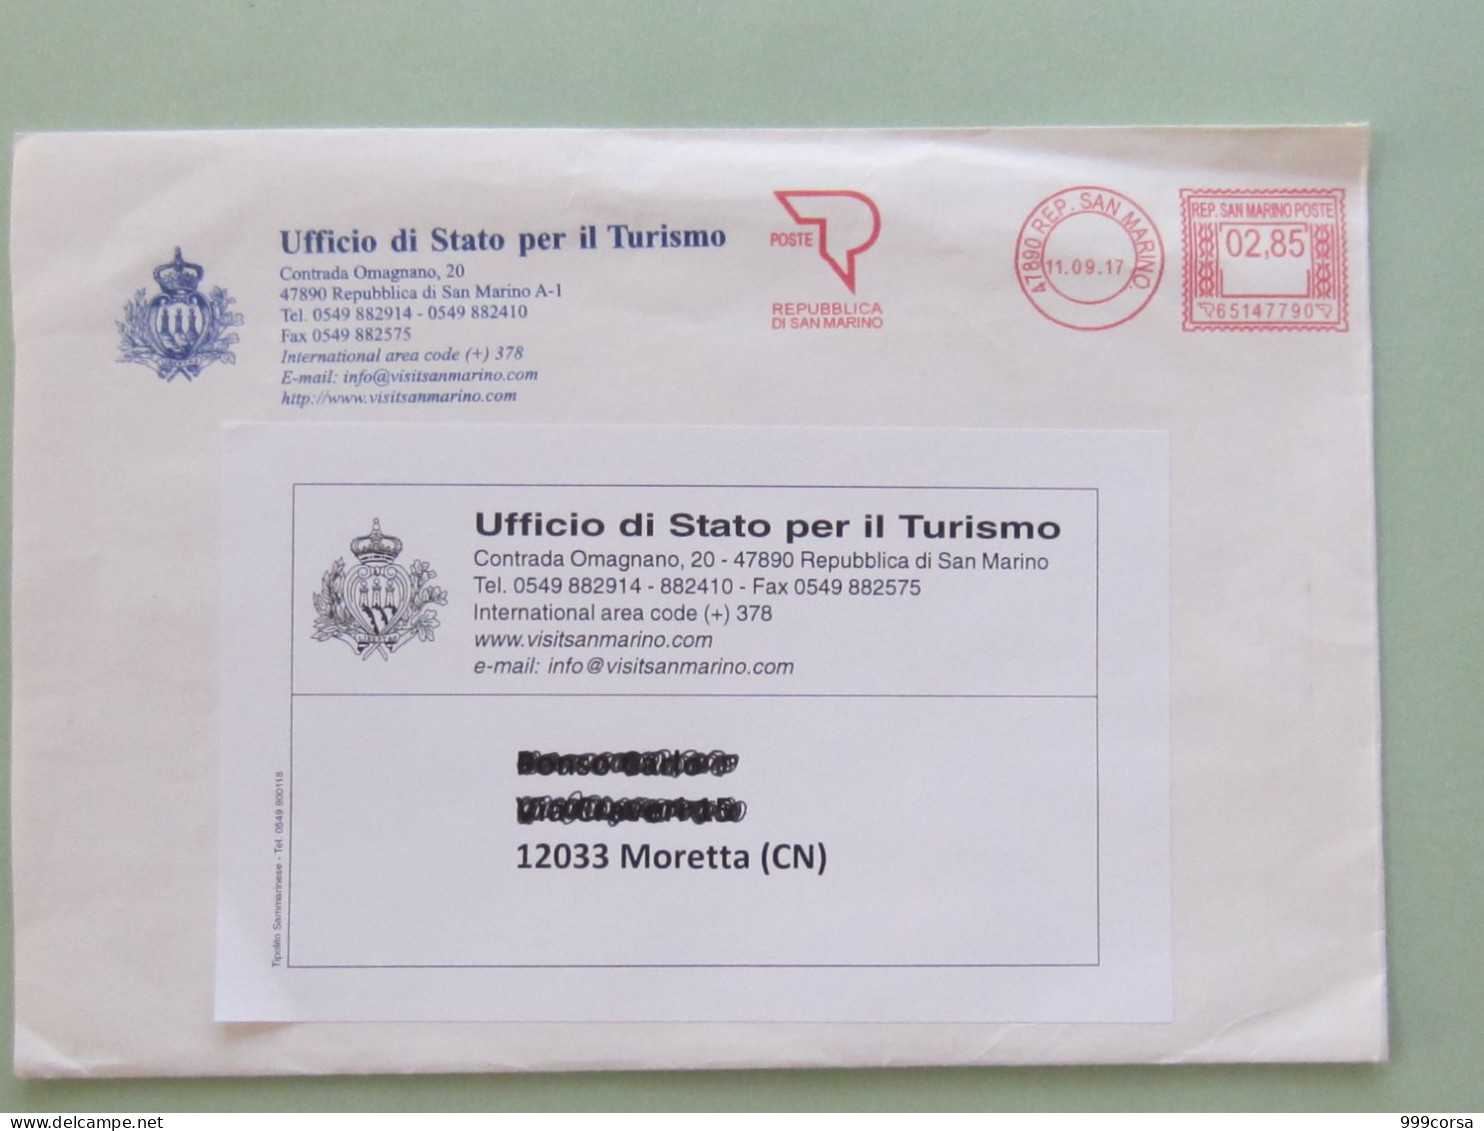 S.Marino, Ema, Affrancatura Mecc., Meter, Freistempel, Ufficio Di Stato Per Il Turismo, Tariffa 2,85, 3°porto(100g.) - Briefe U. Dokumente